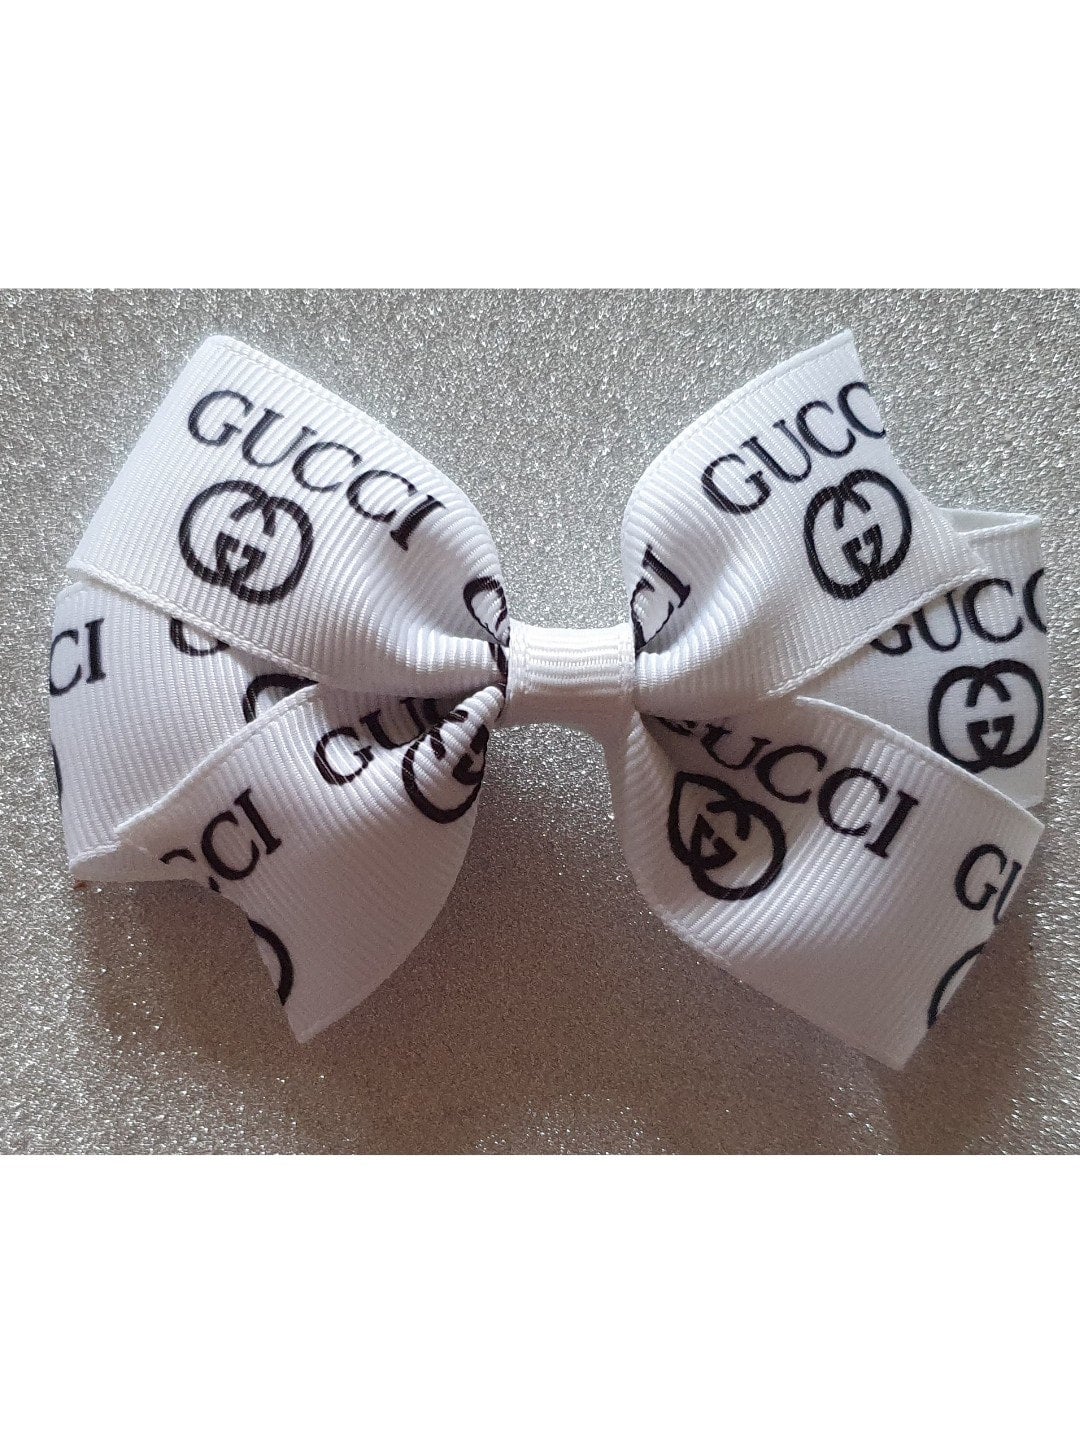 gucci hair bow